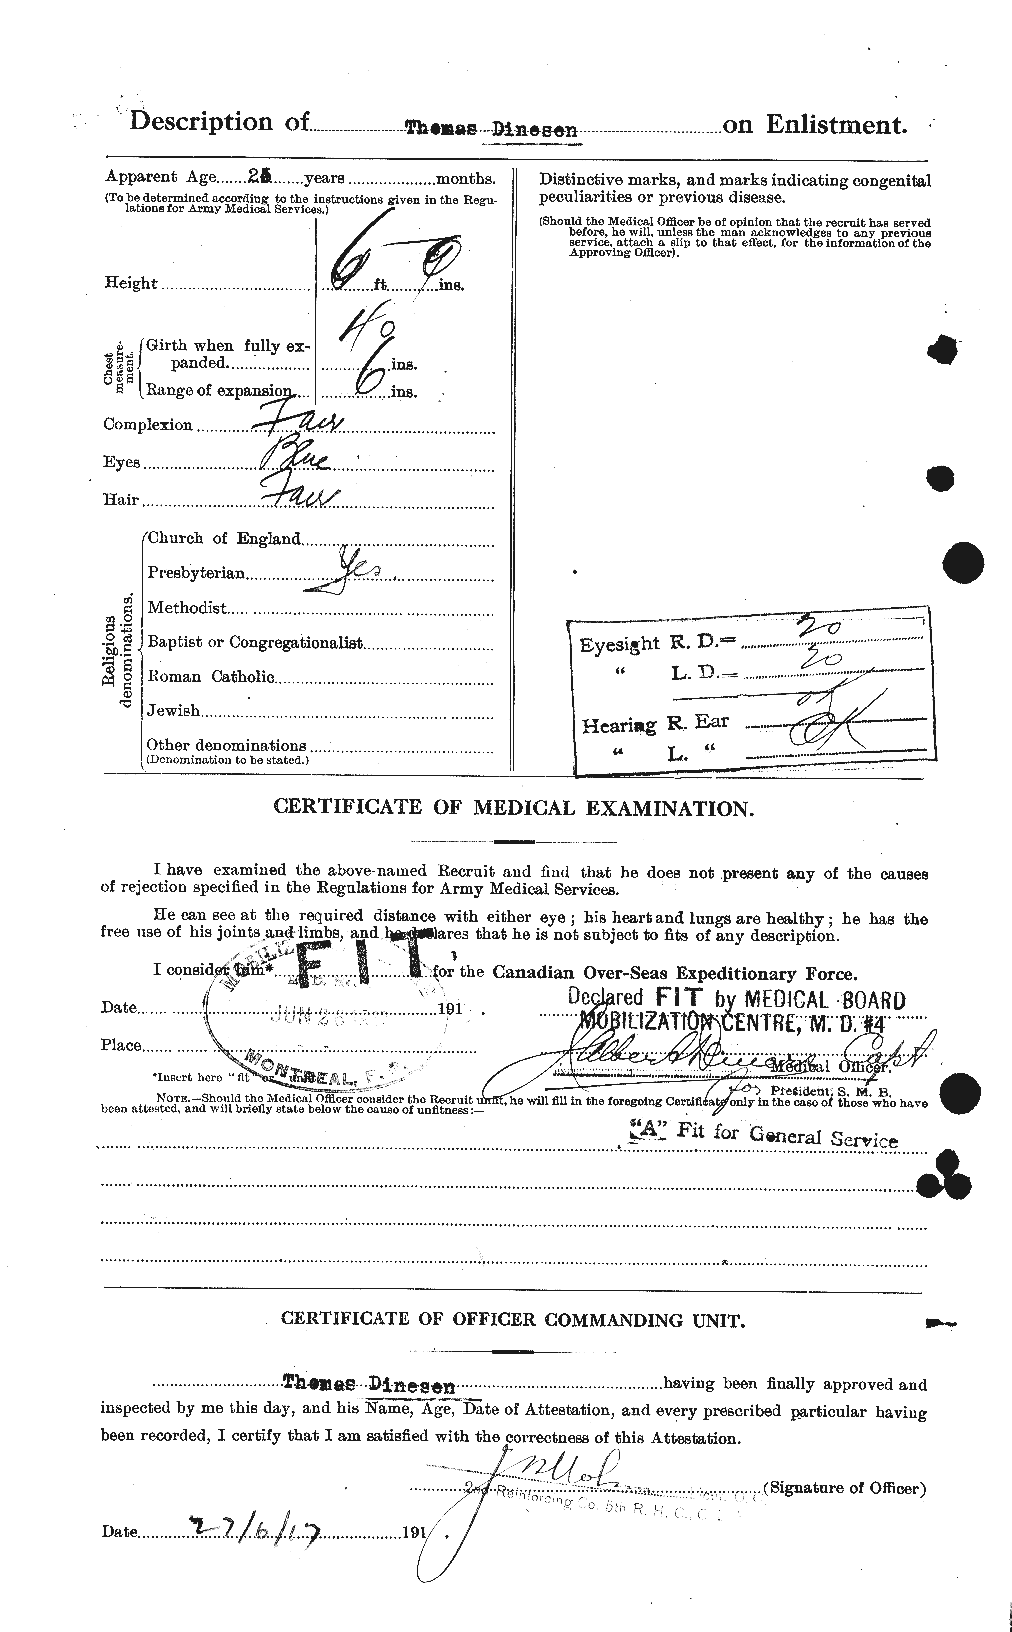 Dossiers du Personnel de la Première Guerre mondiale - CEC 295235b